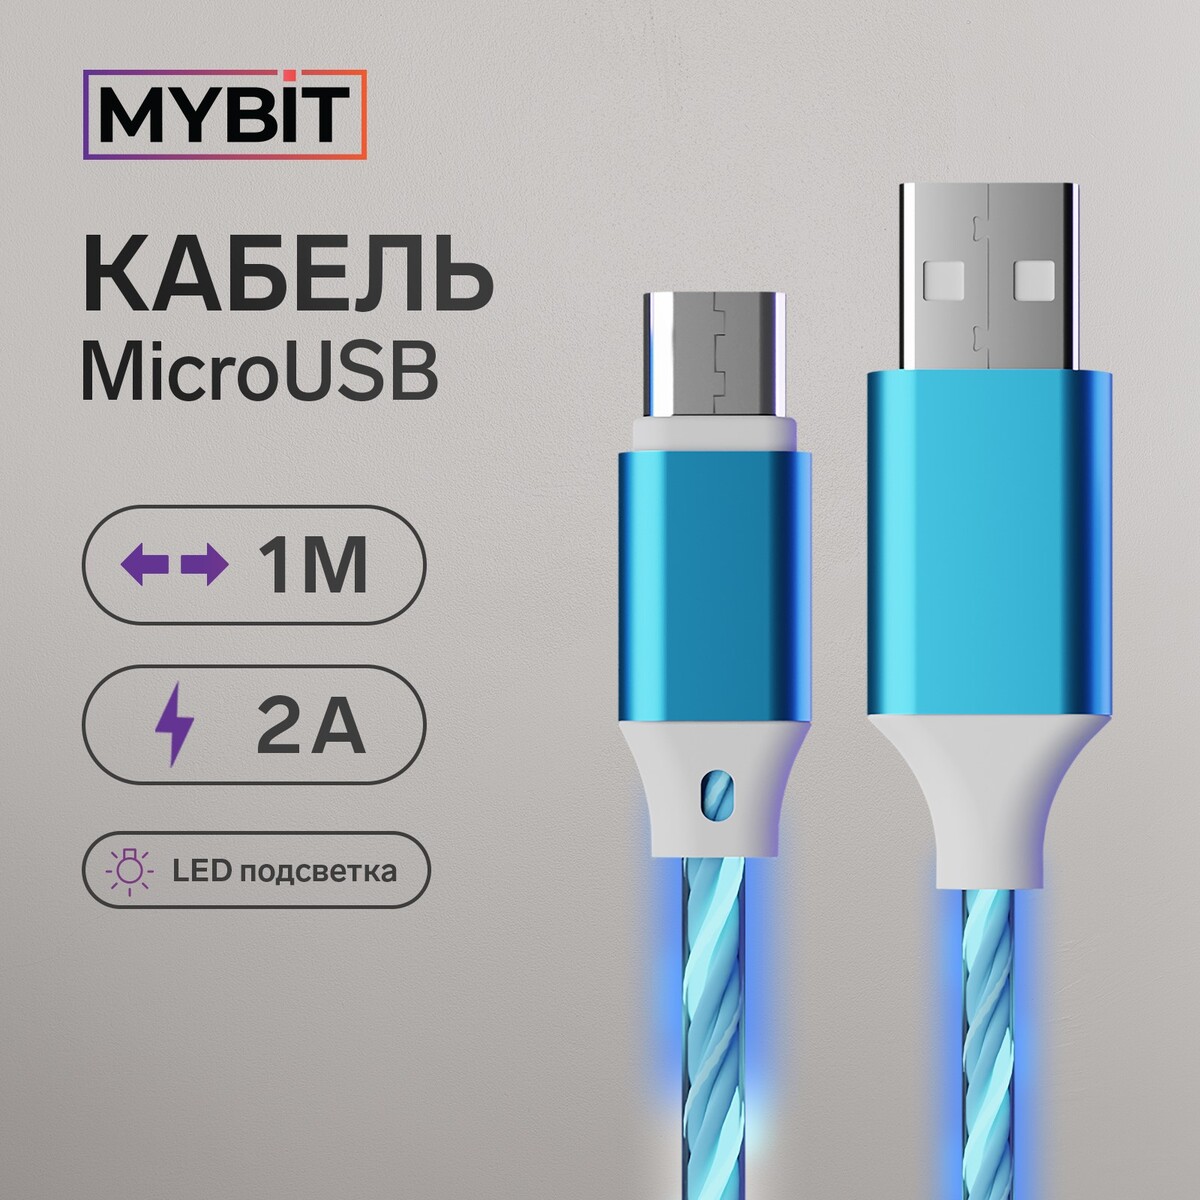 Кабель mybit, microusb - usb, динамическая led подсветка, 2 а, 1 м, только зарядка кабель mybit microusb usb динамическая led подсветка 2 а 1 м только зарядка